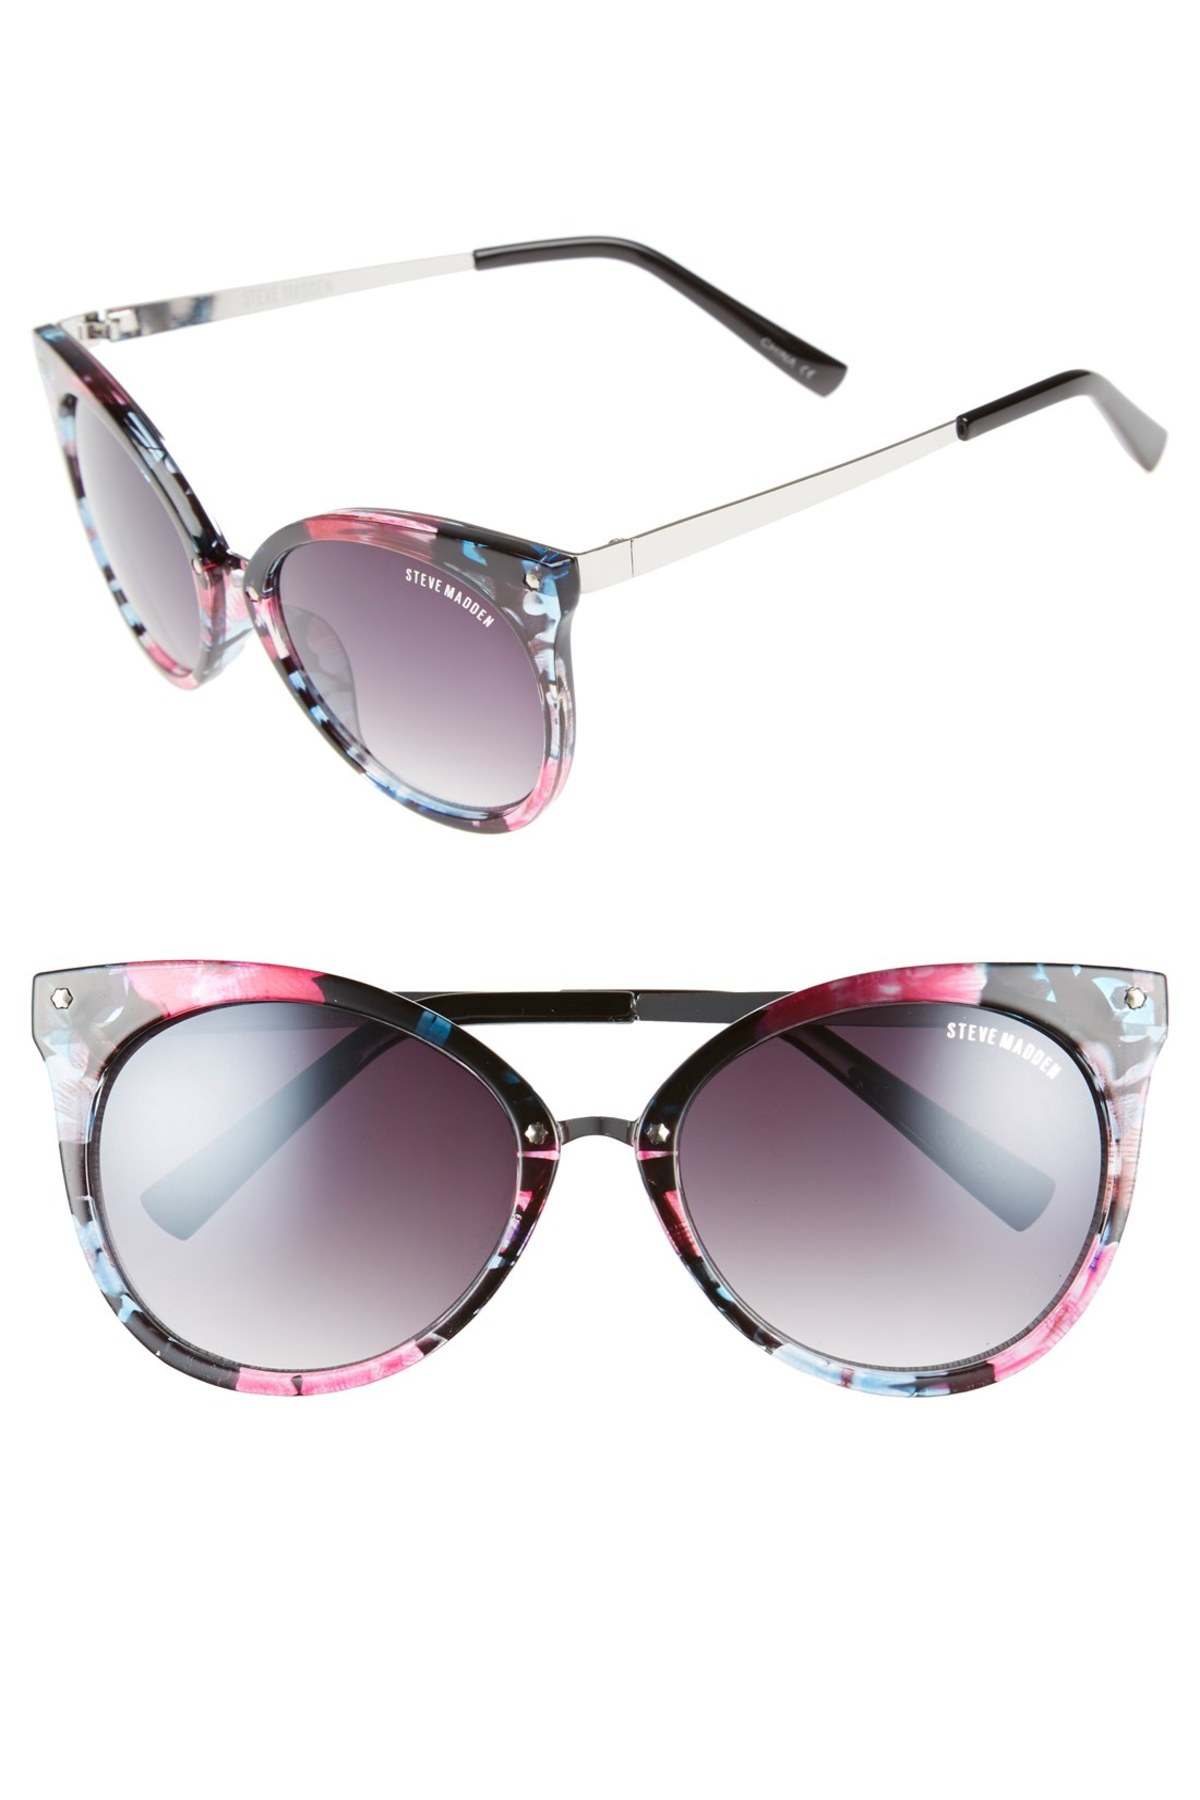 Steve madden Women's Cat-eye Sunglasses | Lyst